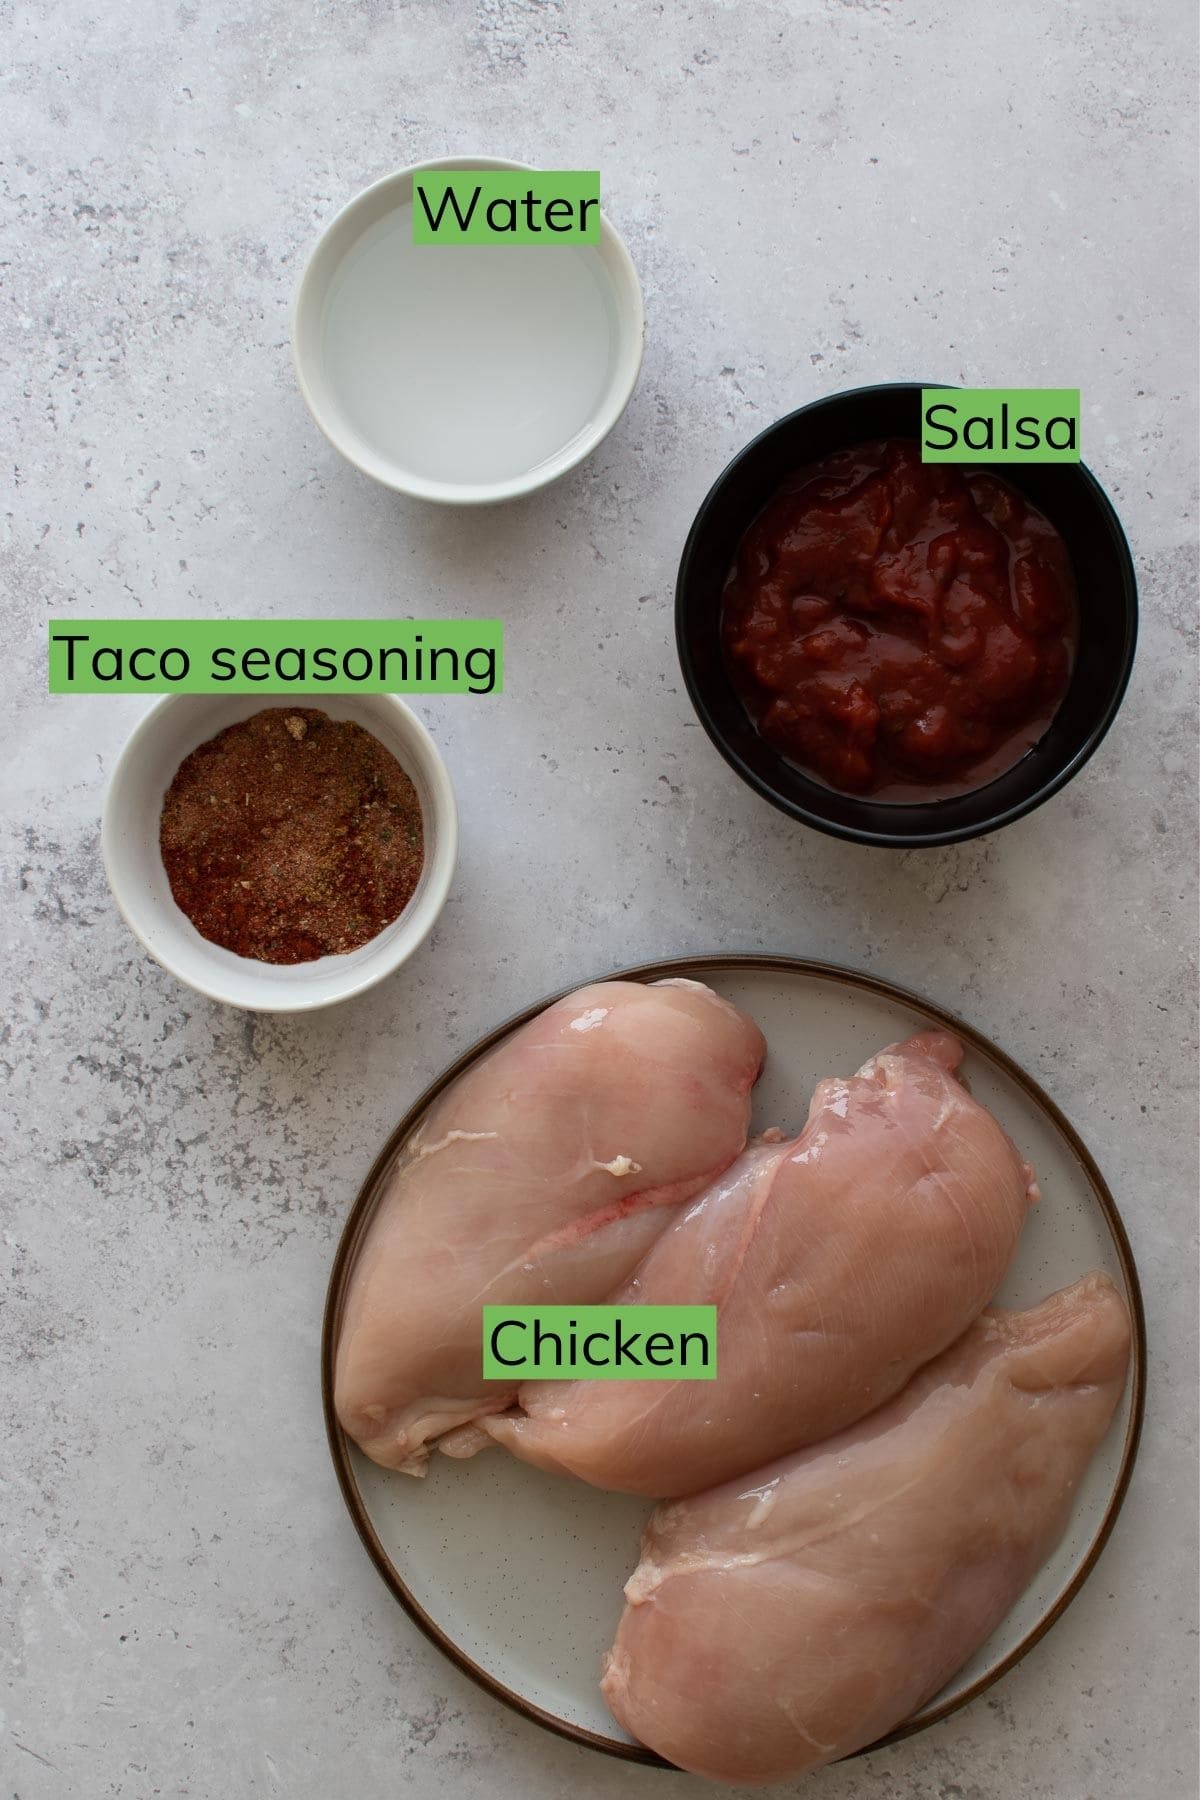 Salsa chicken ingredients.